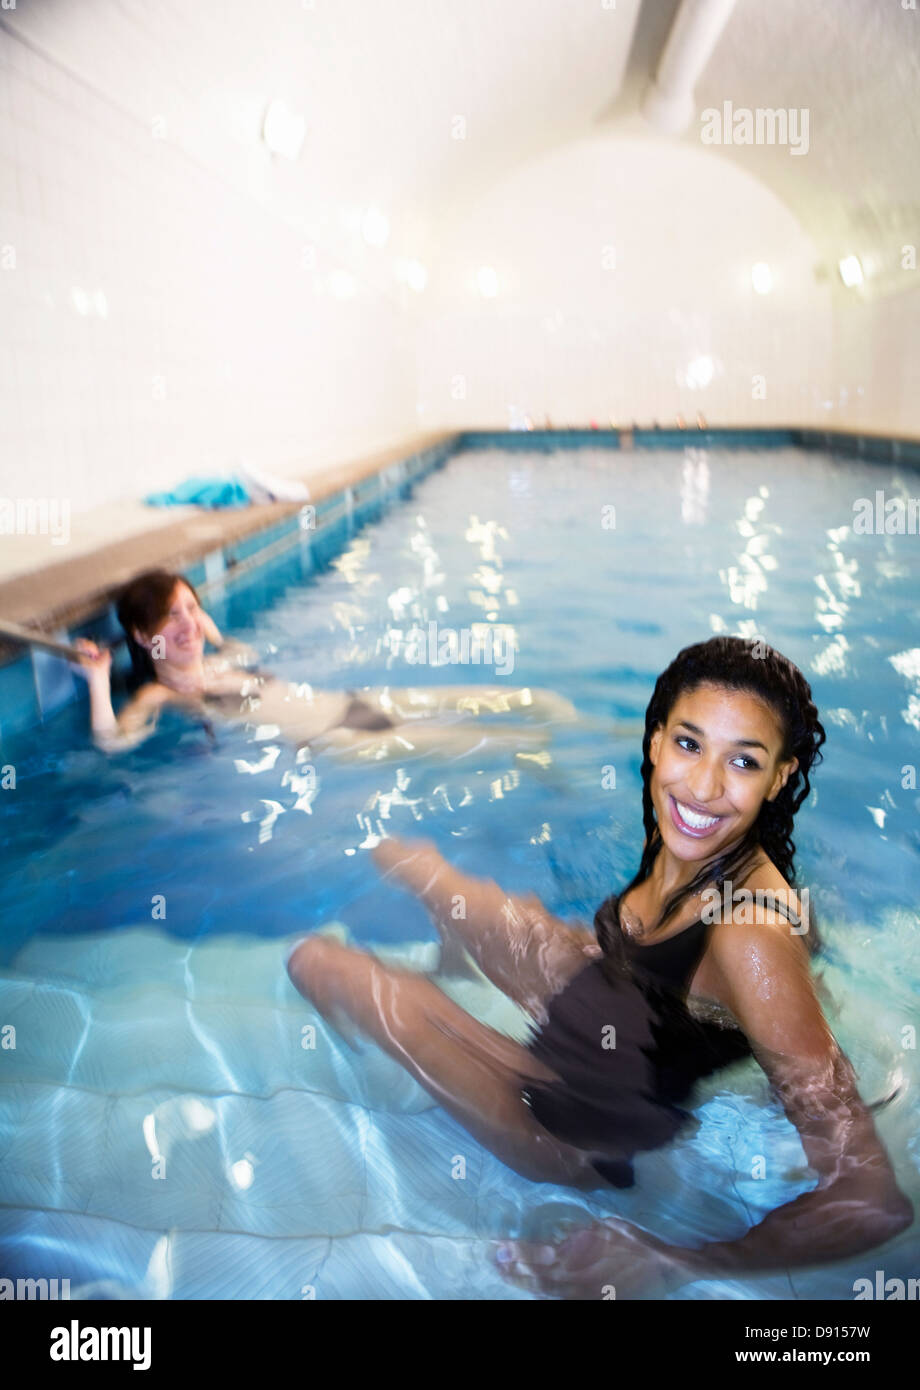 Zwei junge Frauen in öffentlichen Schwimmbädern, Stockholm, Schweden. Stockfoto